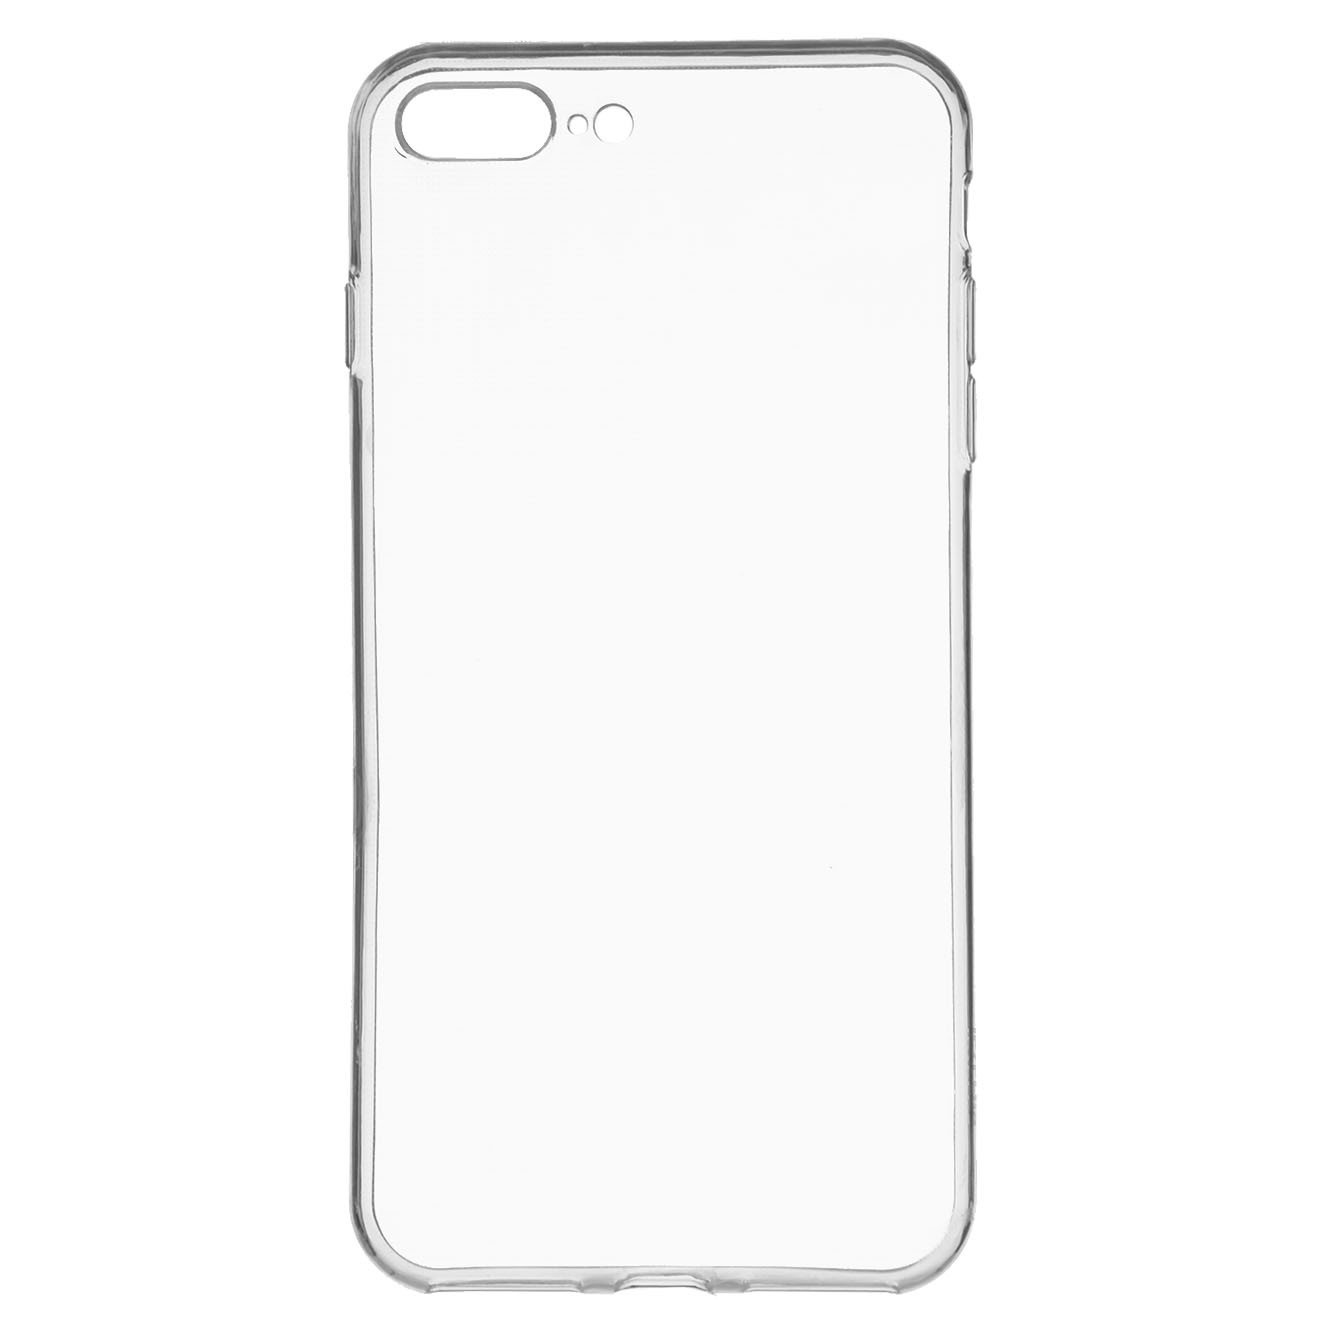 GENERICO Lámina protectora Carcasa para iPhone 8 Transparente